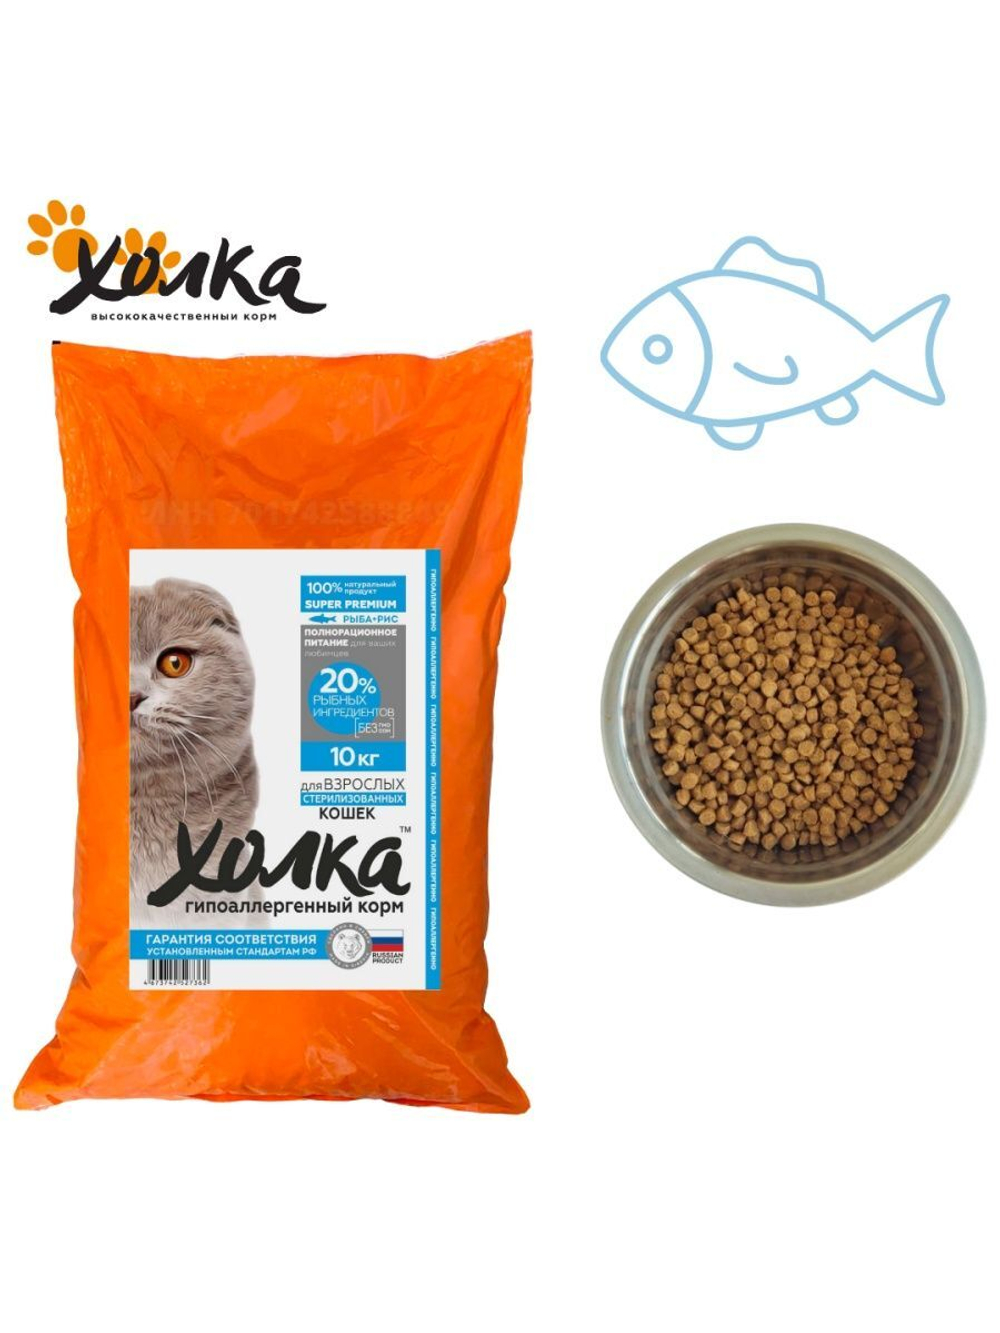 Сухой корм для стерилизованных кошек Холка рыба и рис 10кг.